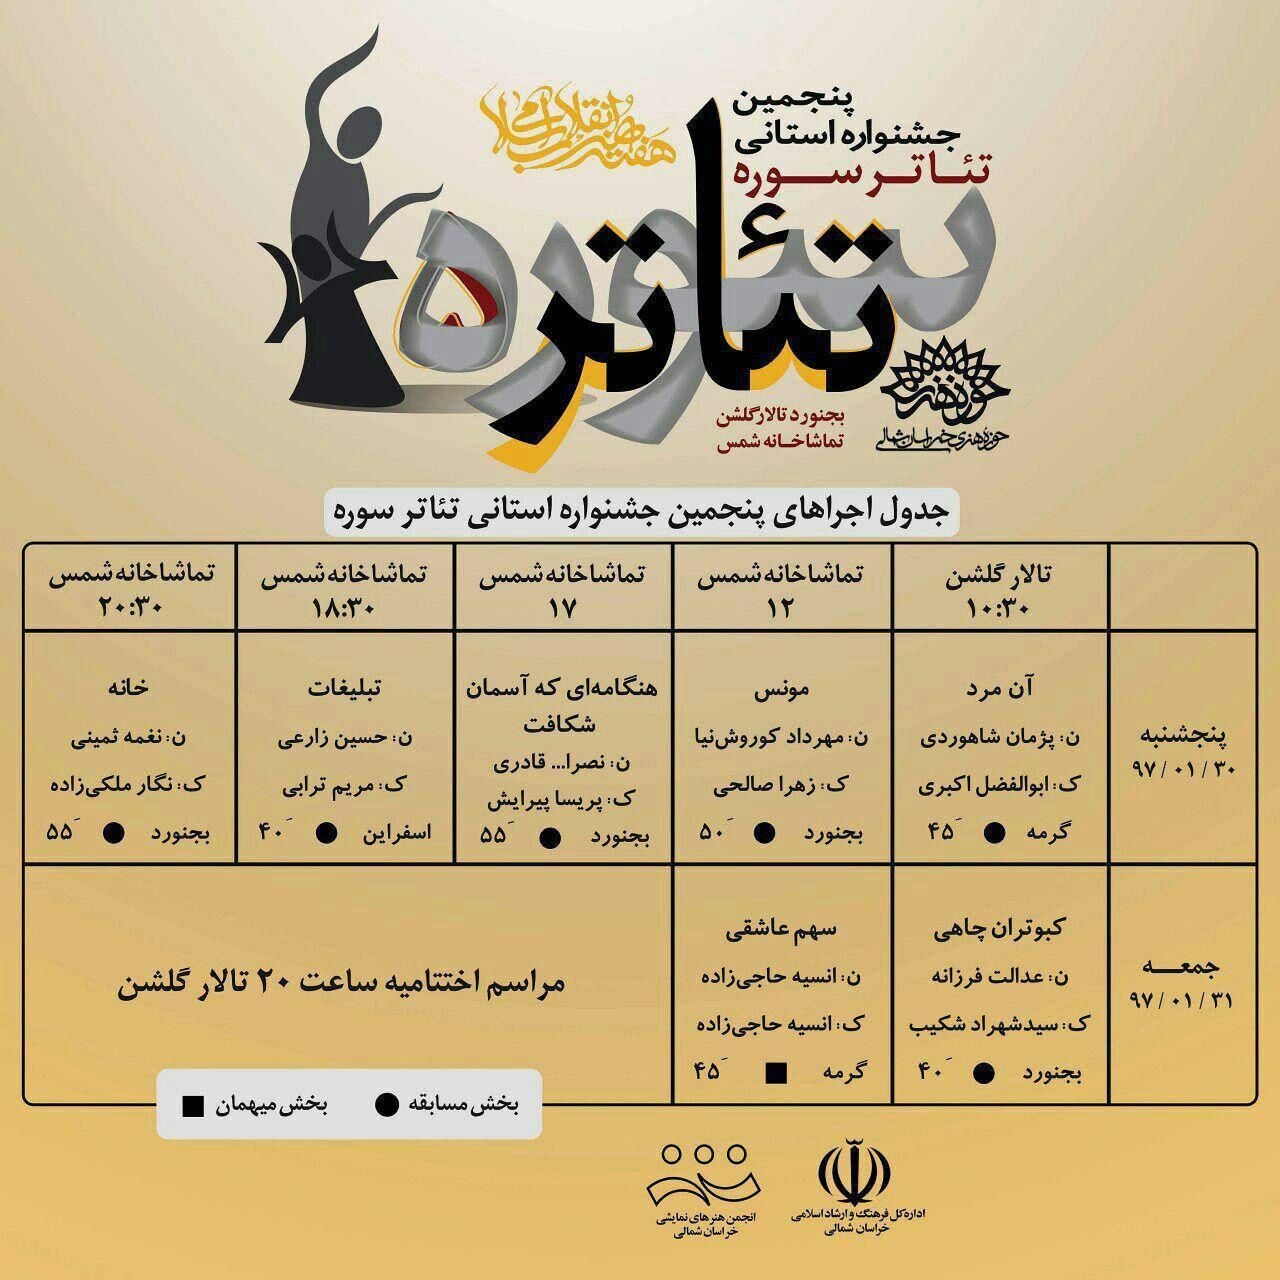 نمایش آثار جشنواره استانی تئاتر سوره، فردا در بجنورد